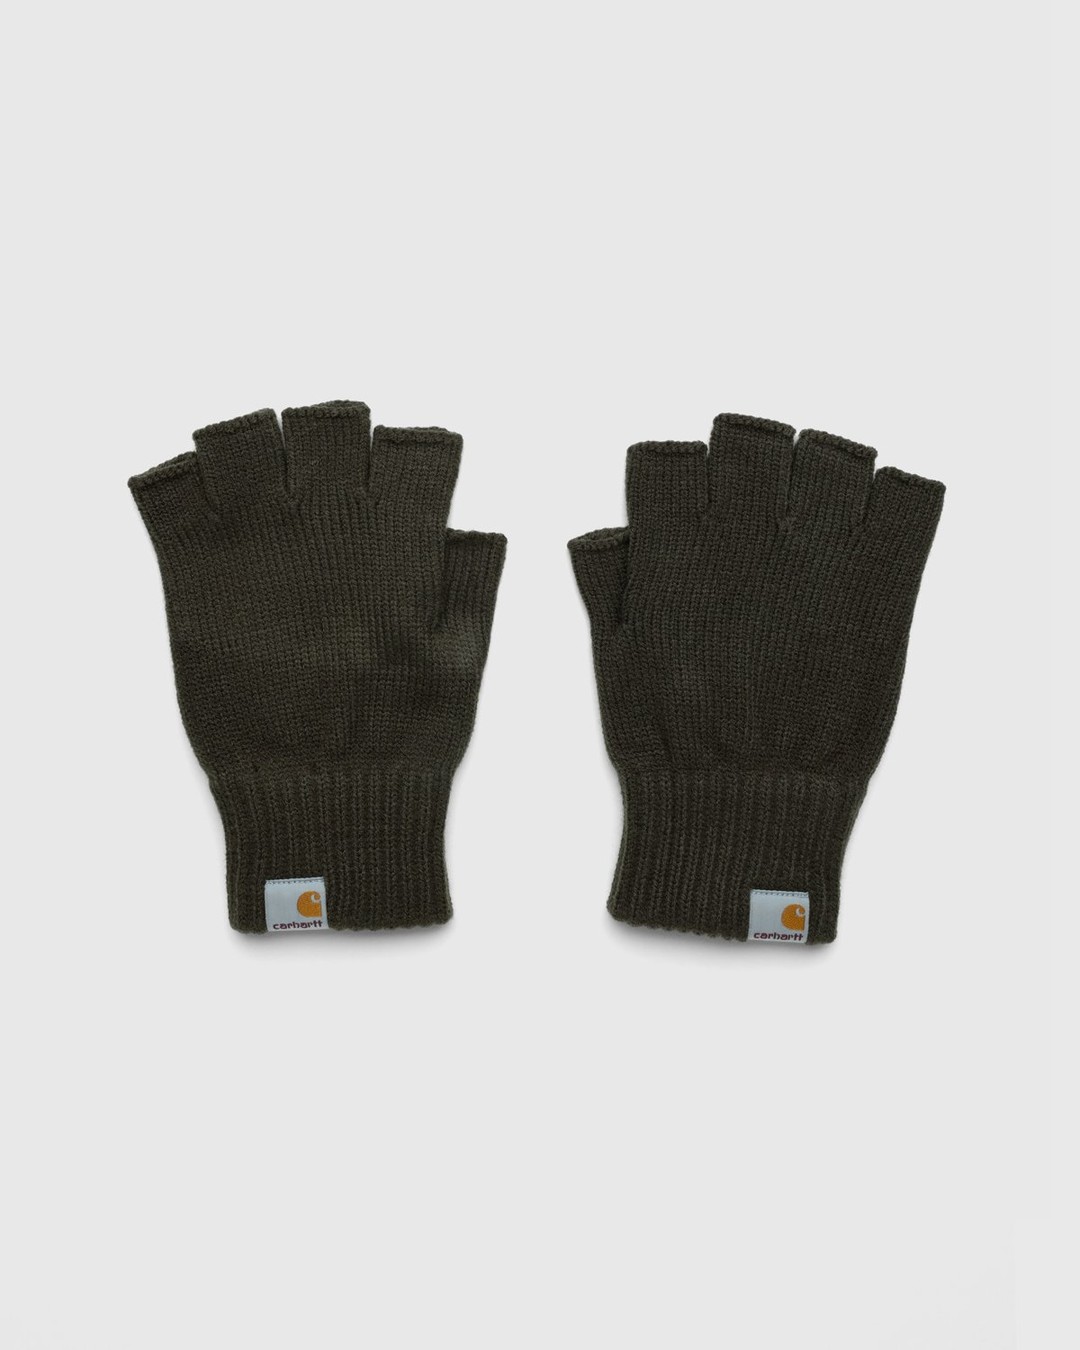 Carhartt WIP – Witten Gloves Khaki - 5-Finger - Green - Image 1